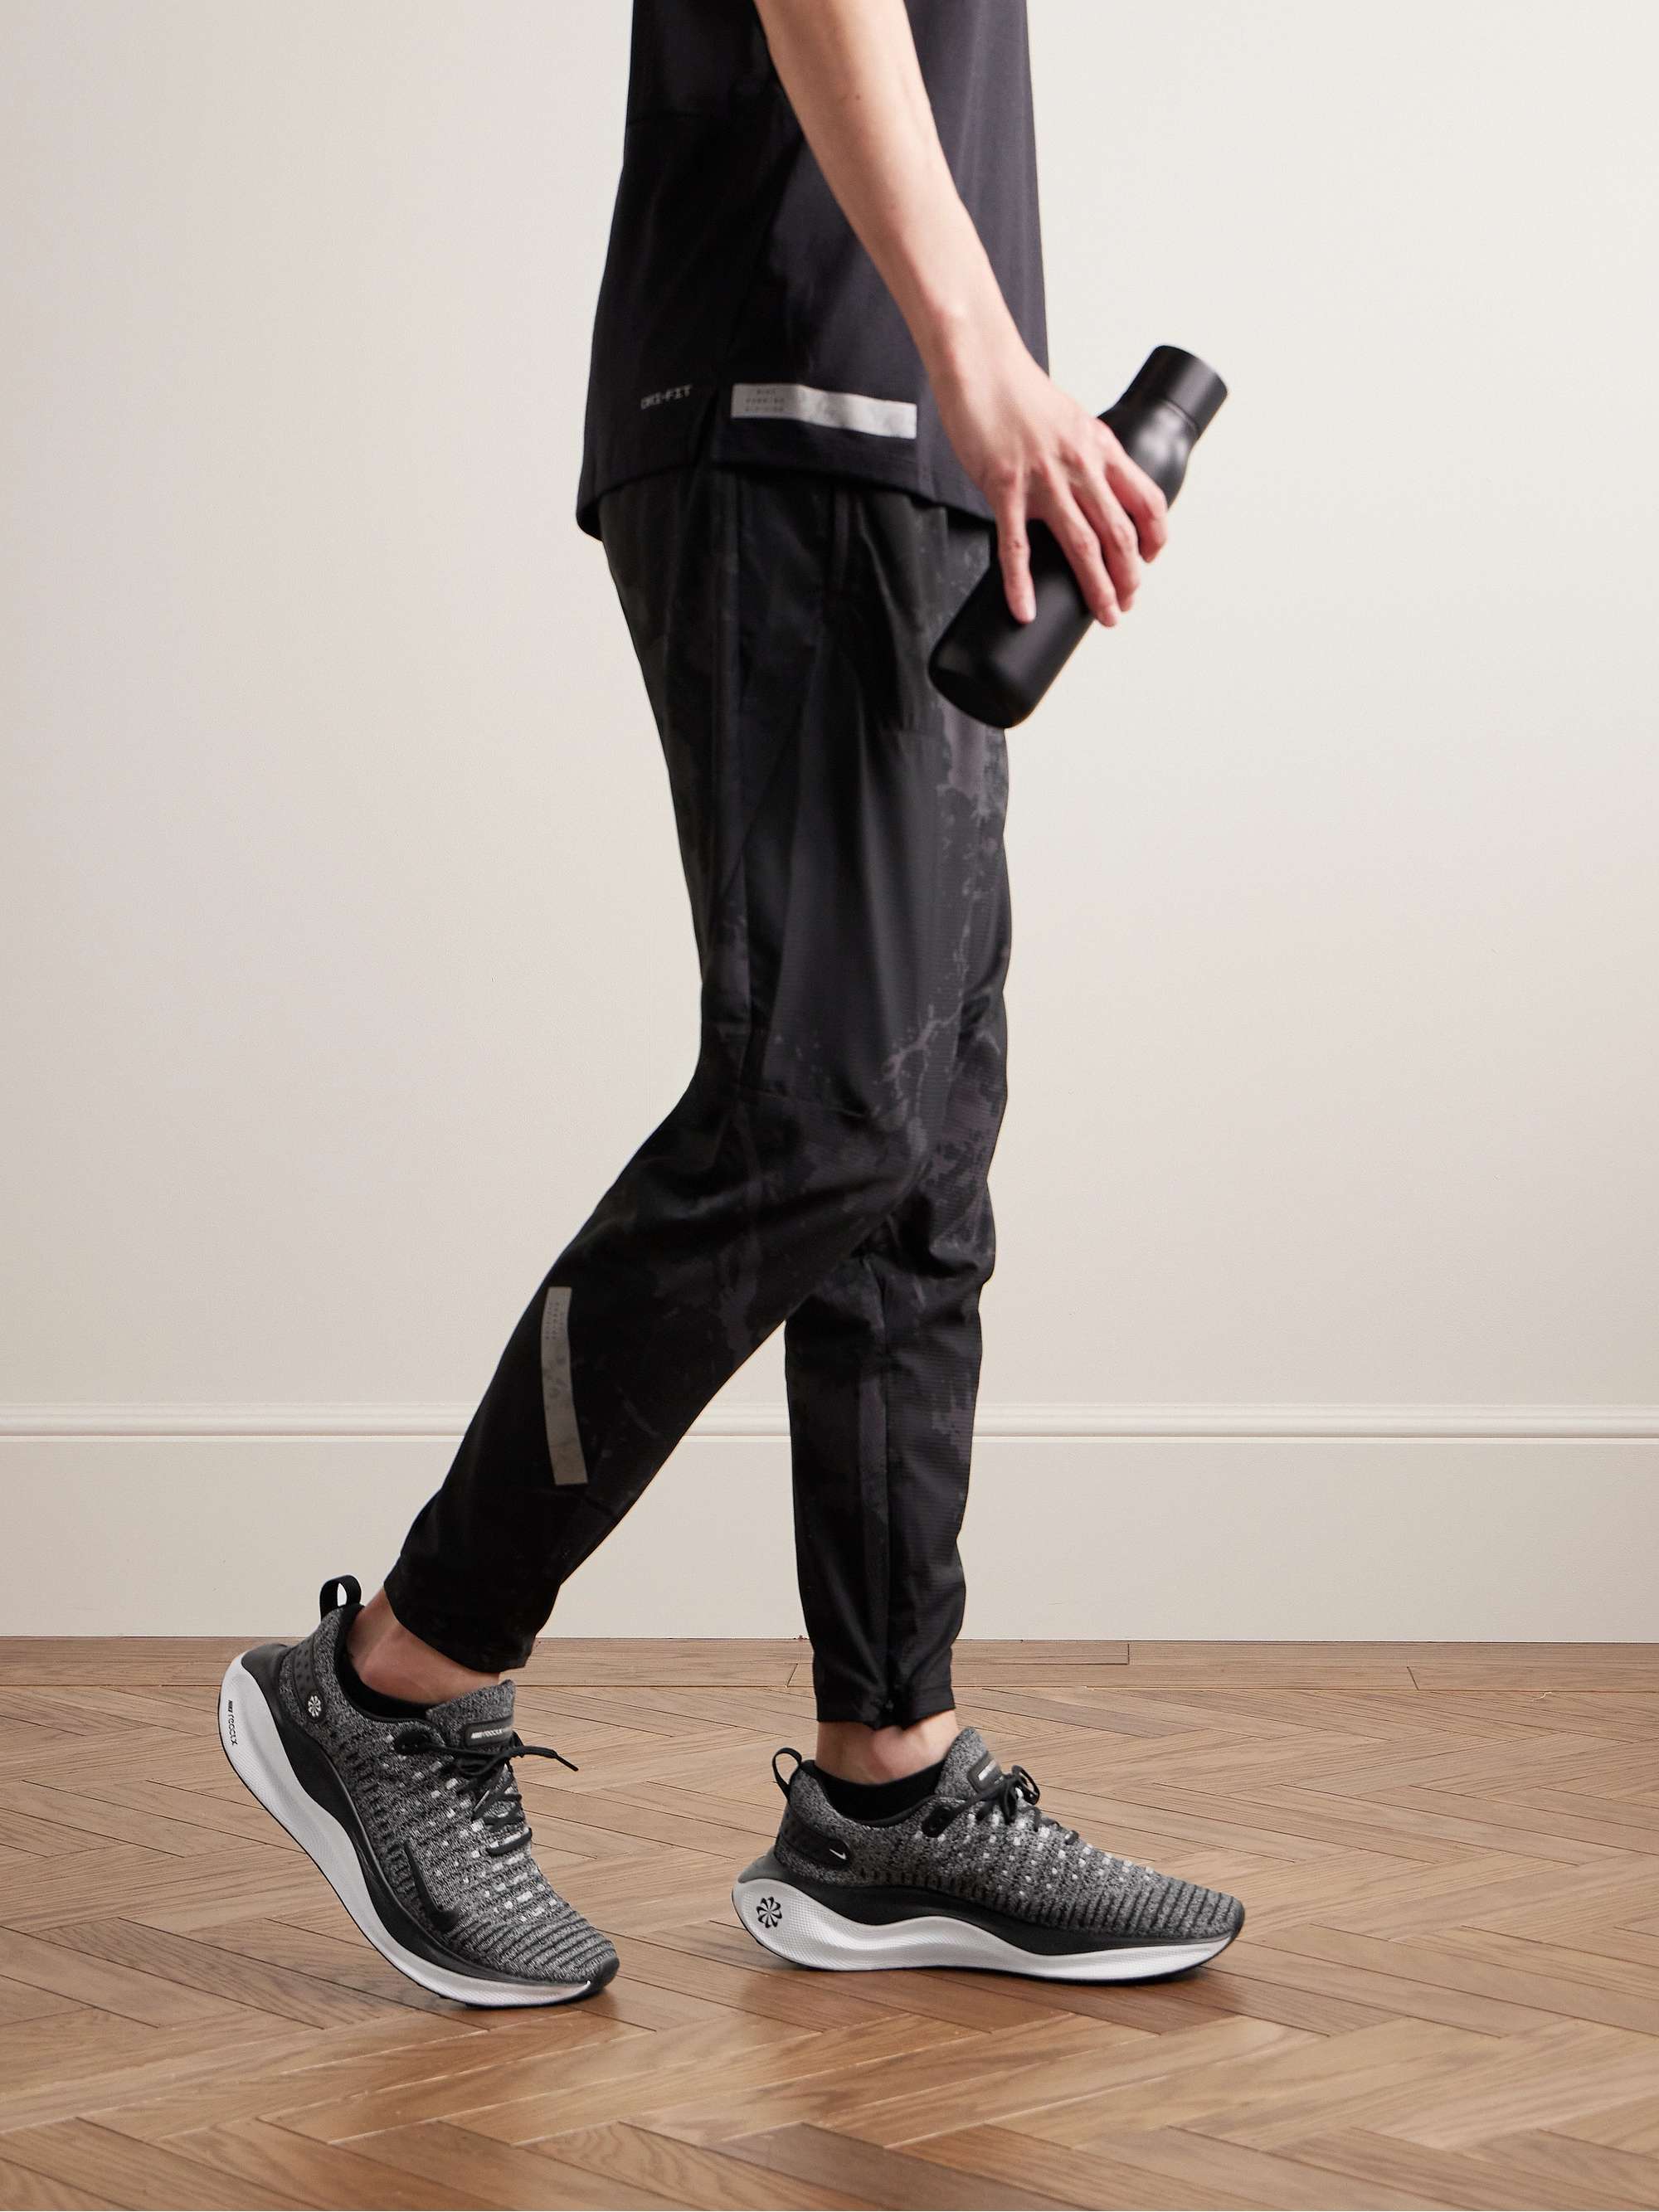 NIKE RUNNING React Infinity Run 4 Flyknit Sneakers for Men | MR PORTER